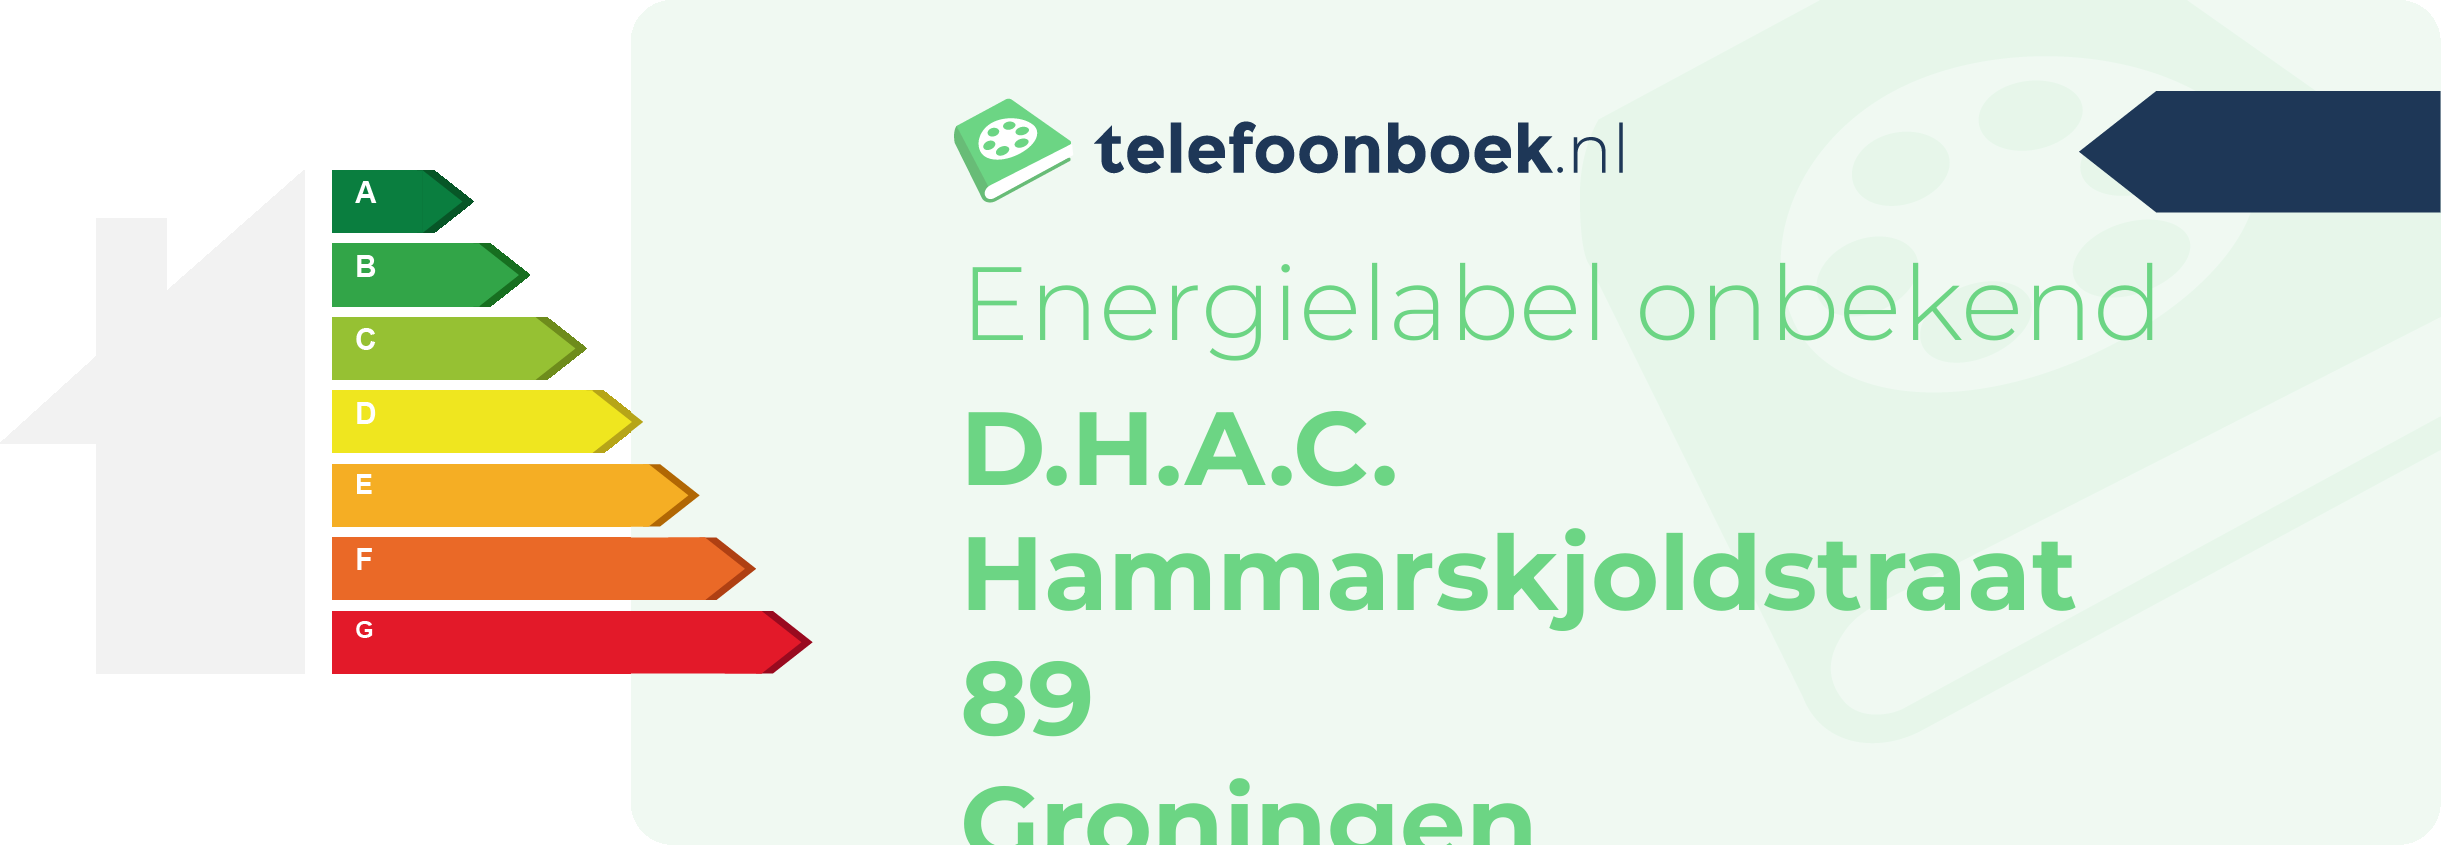 Energielabel D.H.A.C. Hammarskjoldstraat 89 Groningen